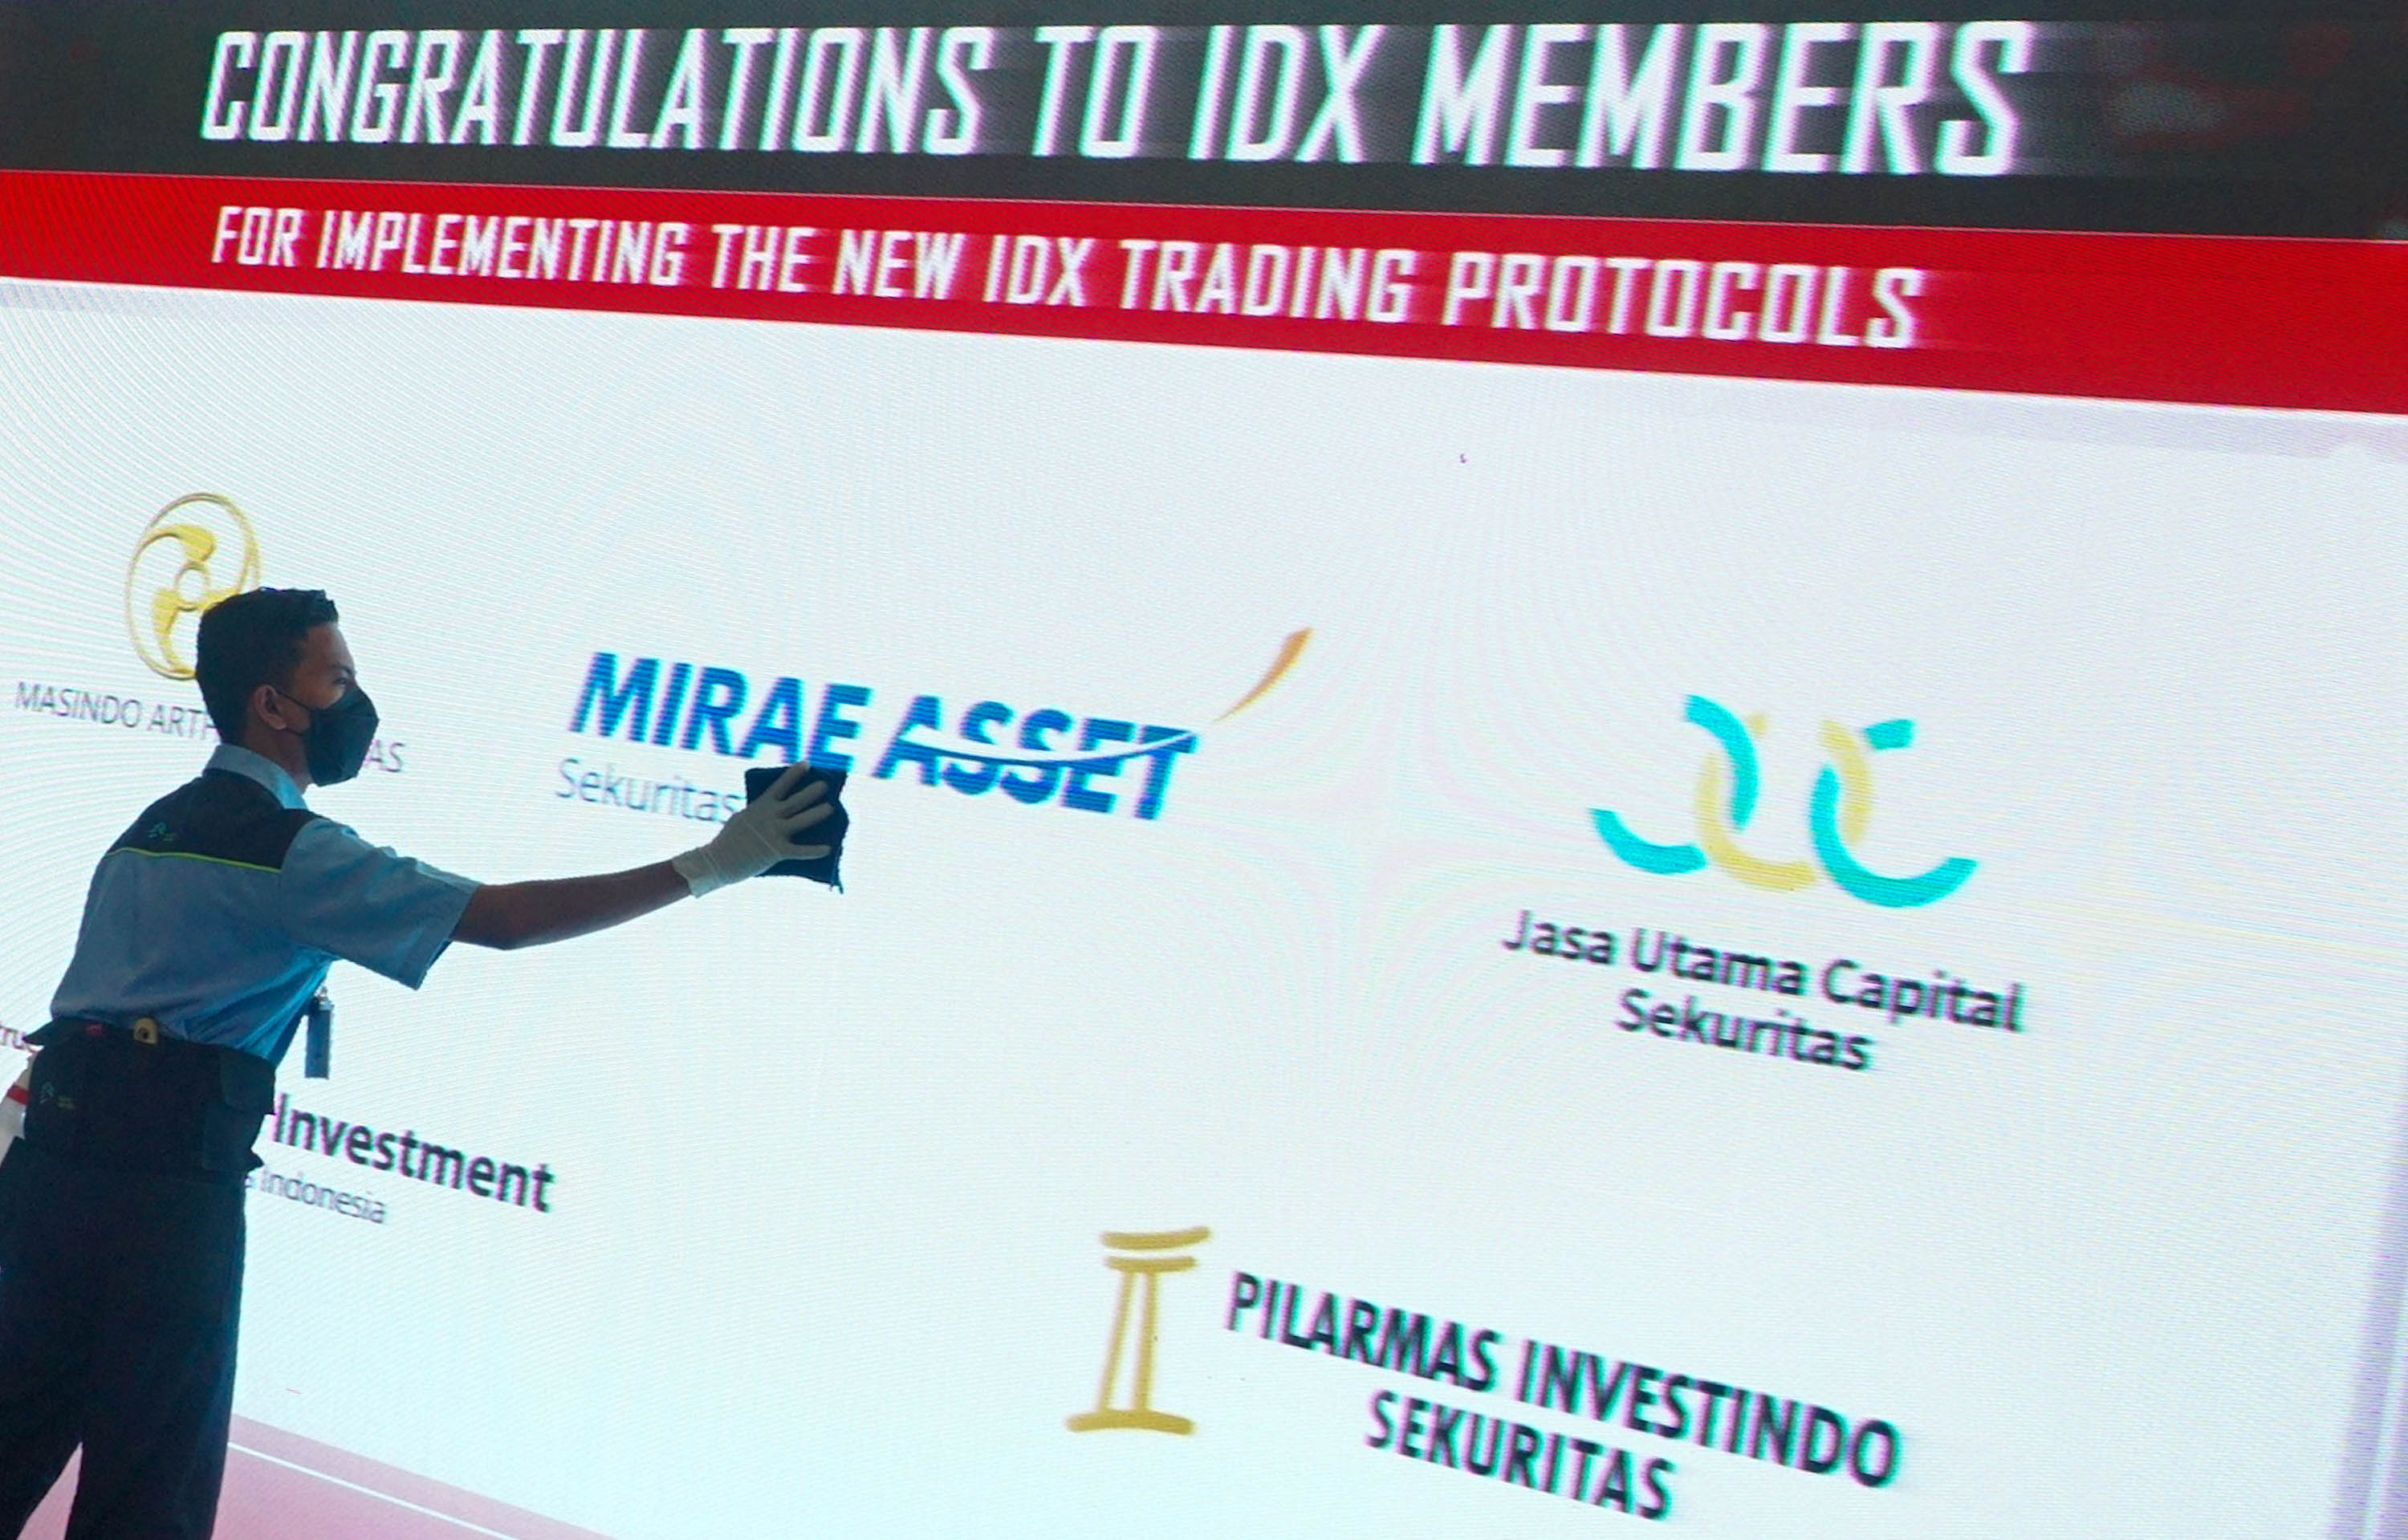 Karyawan beraktivitas di dekat layar daftar perusahaan member IDX yang sudah melantai di Bursa Efek Indonesia (BEI), Jakarta,   Selasa, 7 Juni 2022. Foto: Ismail Pohan/TrenAsia